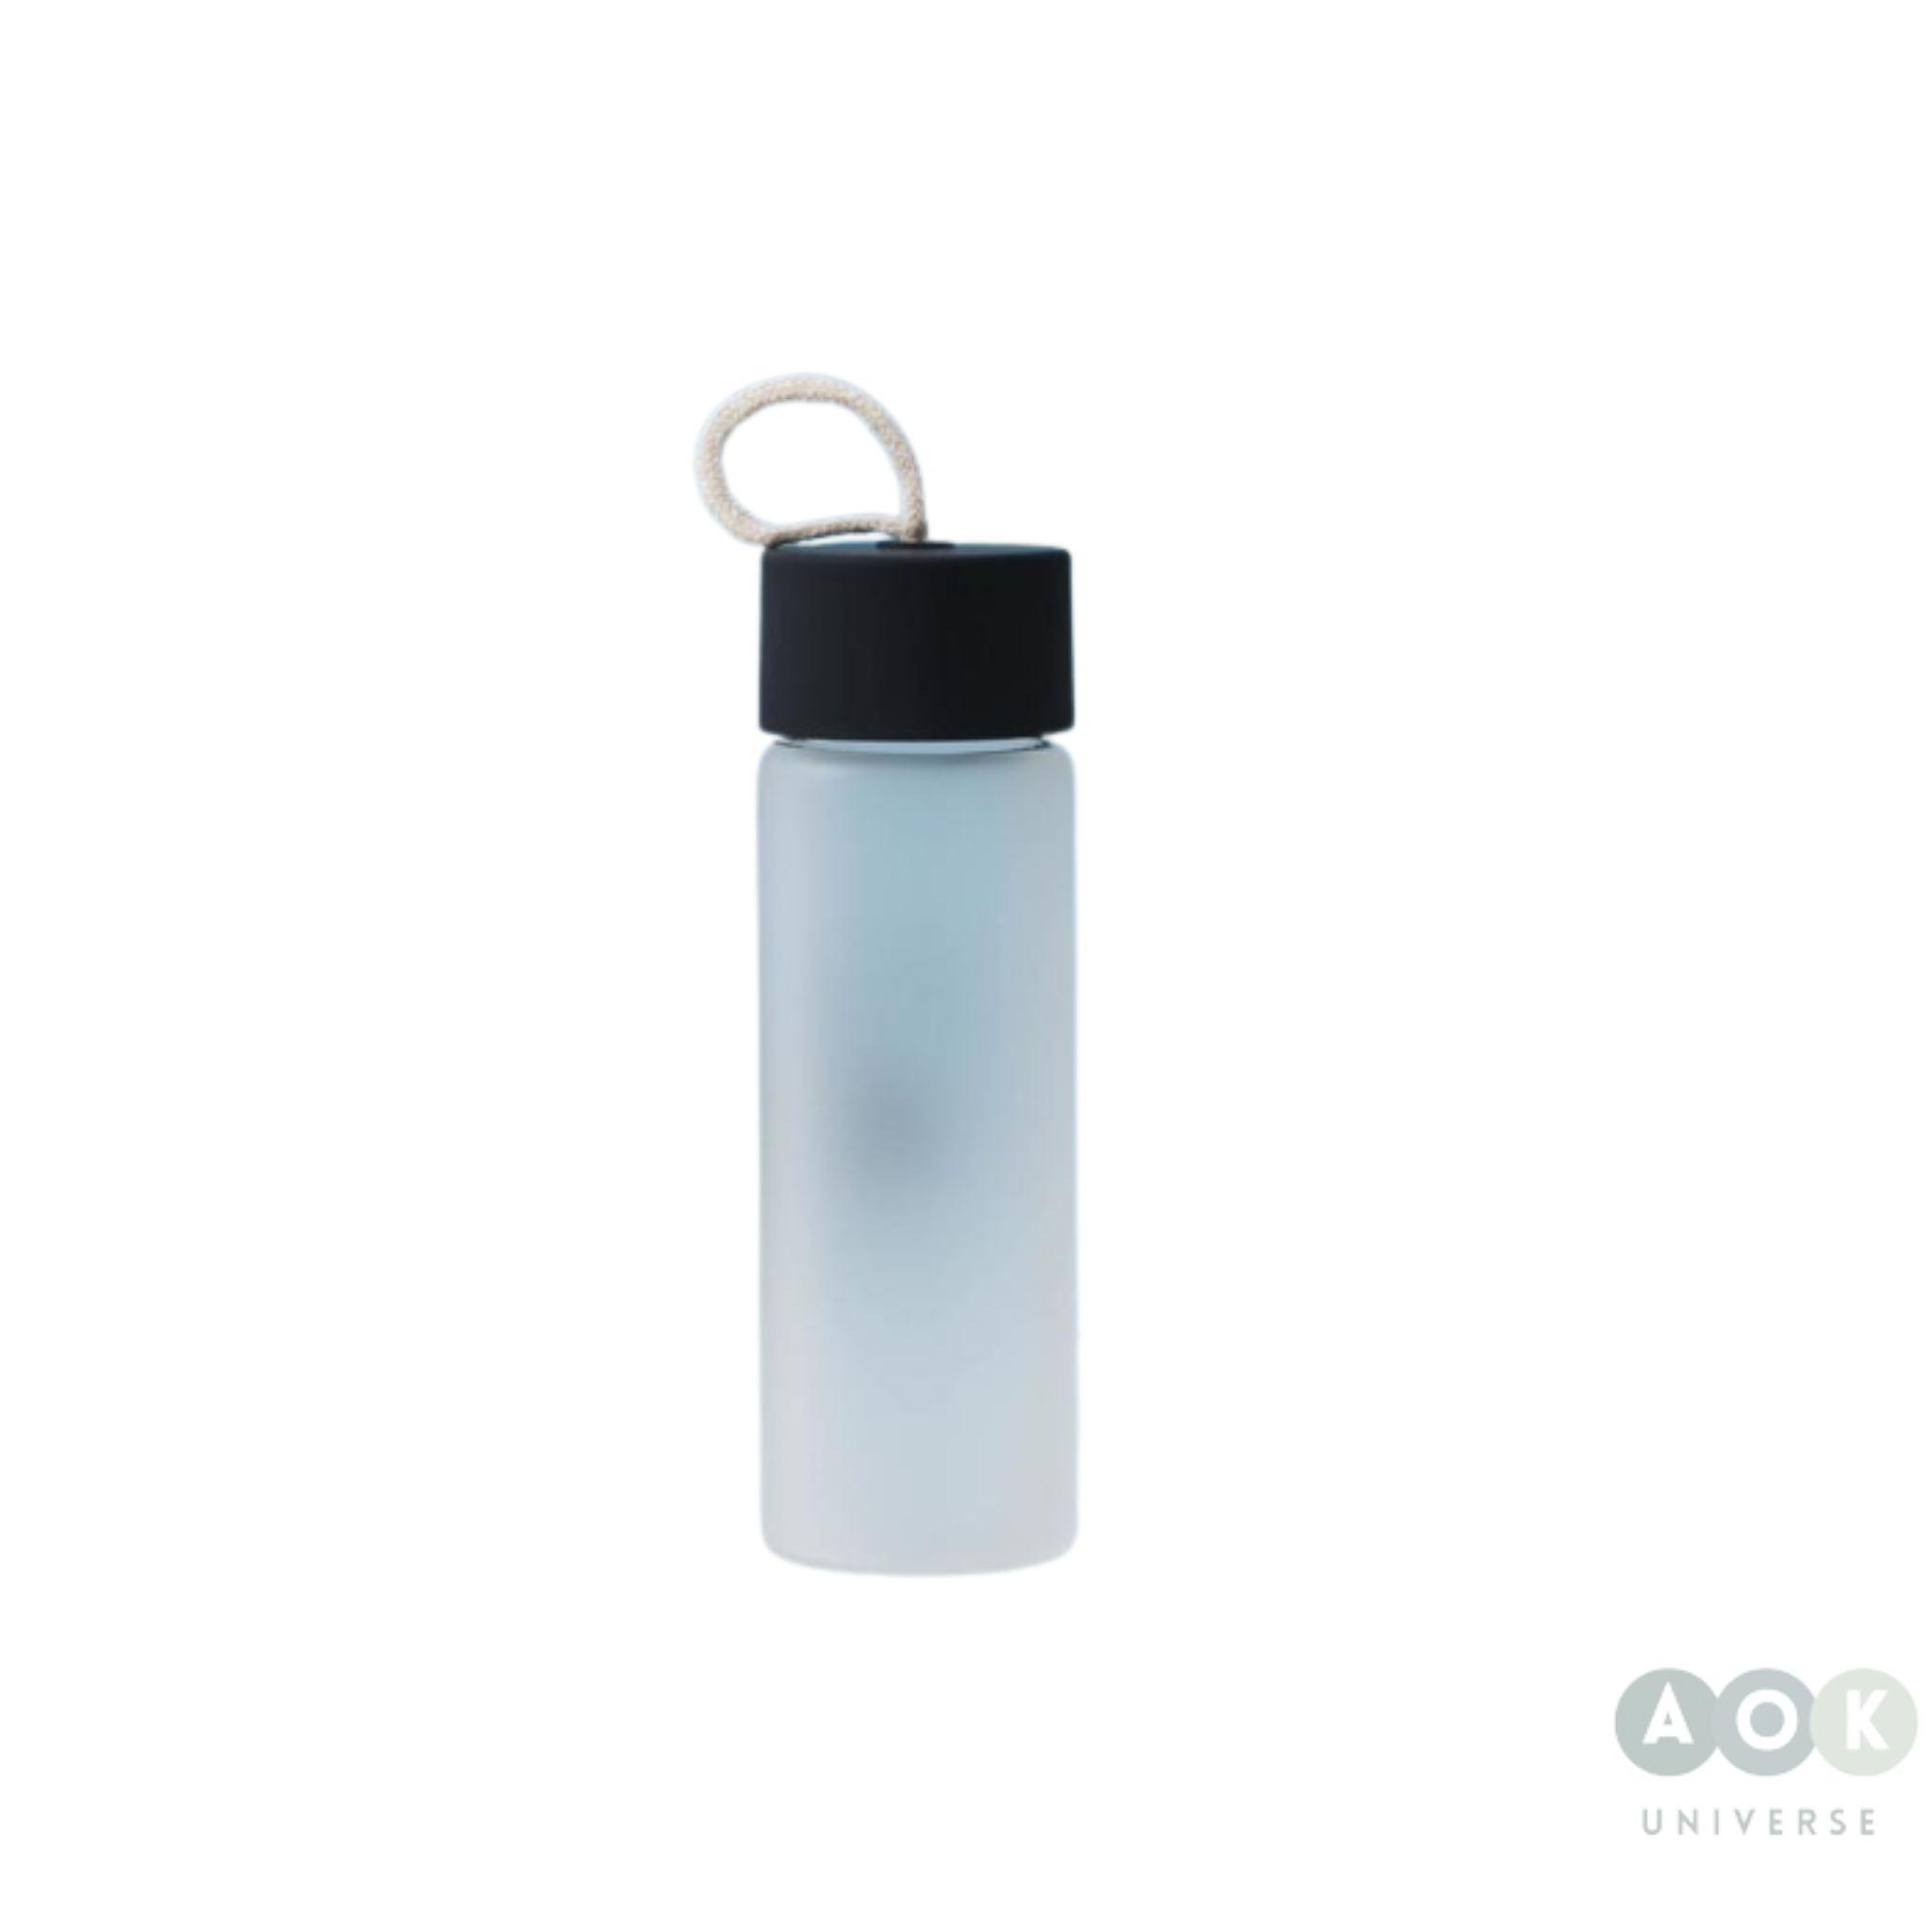 Glass Drinking Bottle - 380ml Leakproof